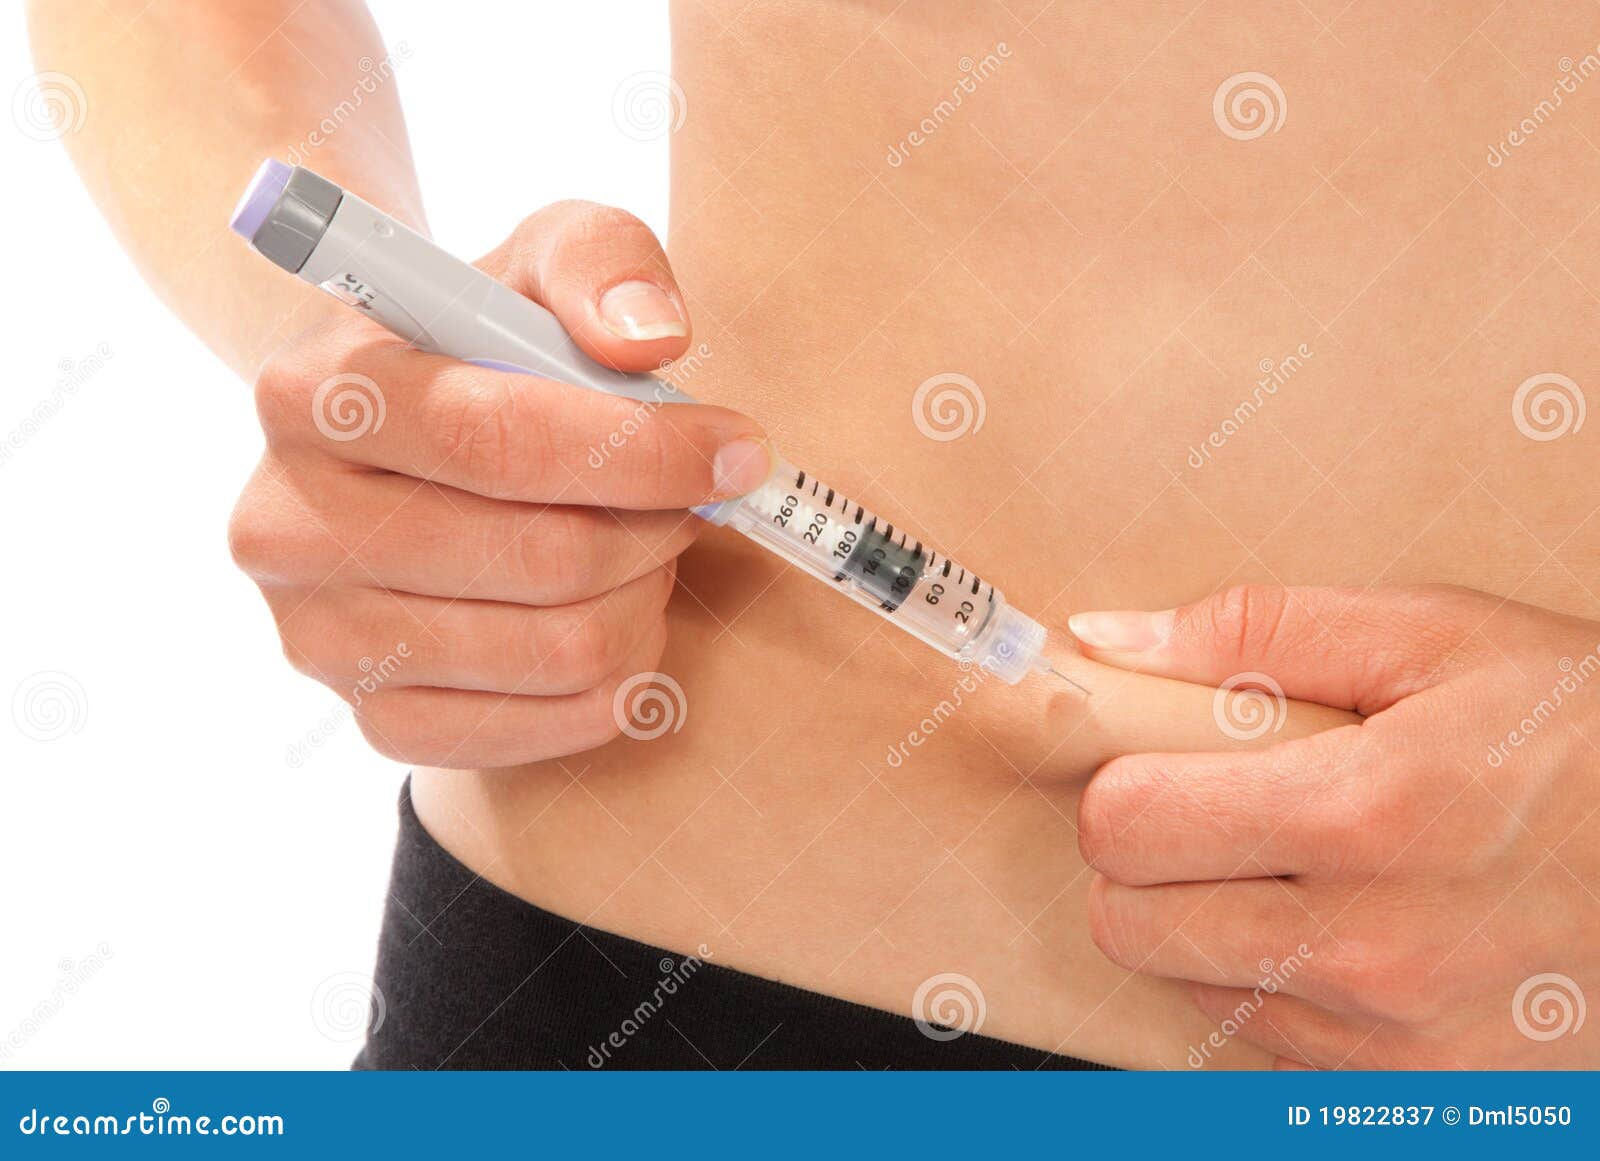 После инъекции инсулина пациент страдающий сахарным. Укол инсулина. Сахарный диабет уколы. Места инъекций инсулина.